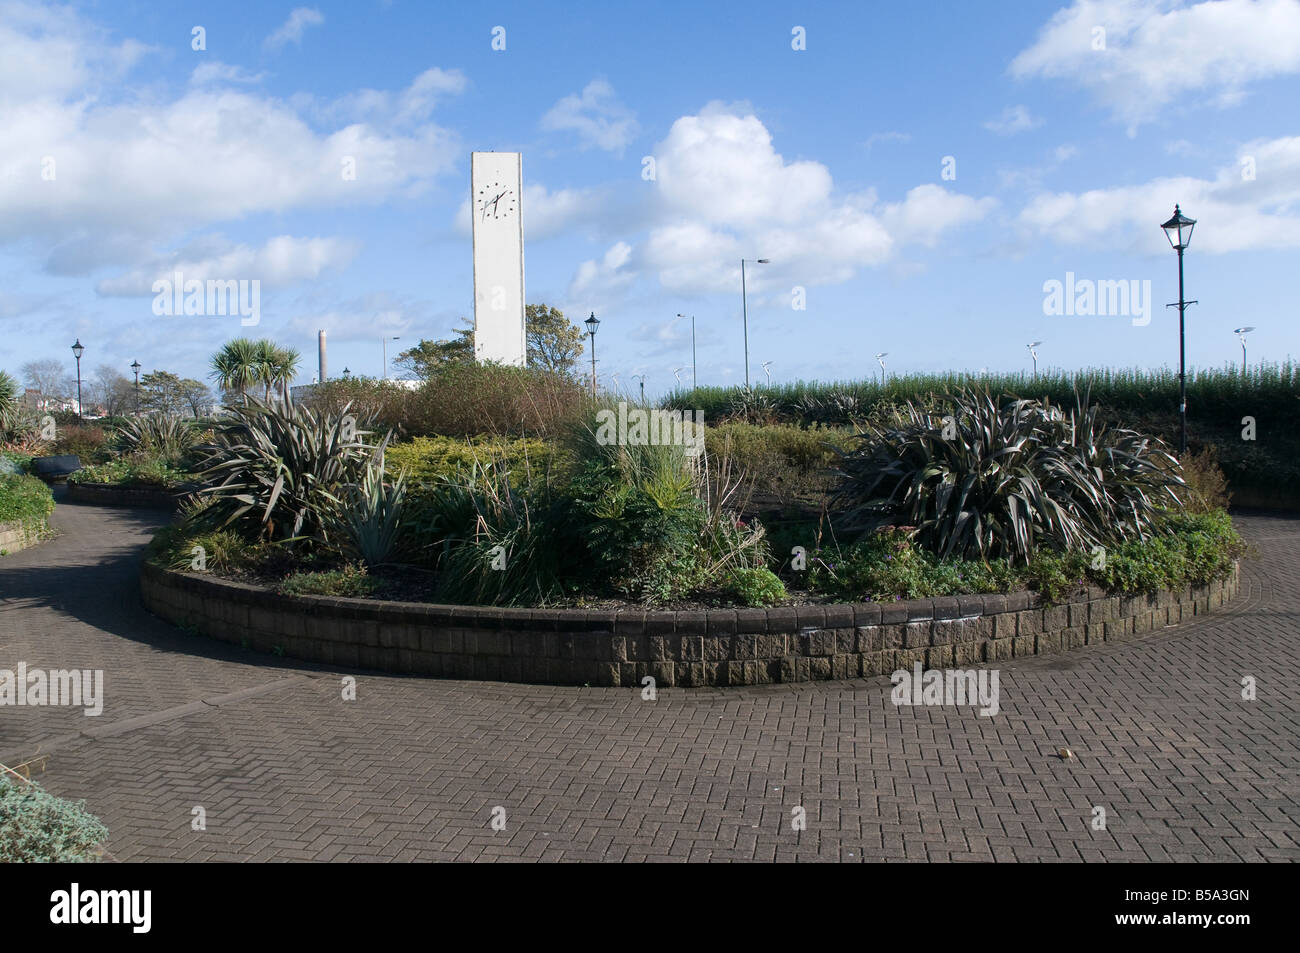 Marine Gardens and clock tower, Carrickfergus Stock Photo